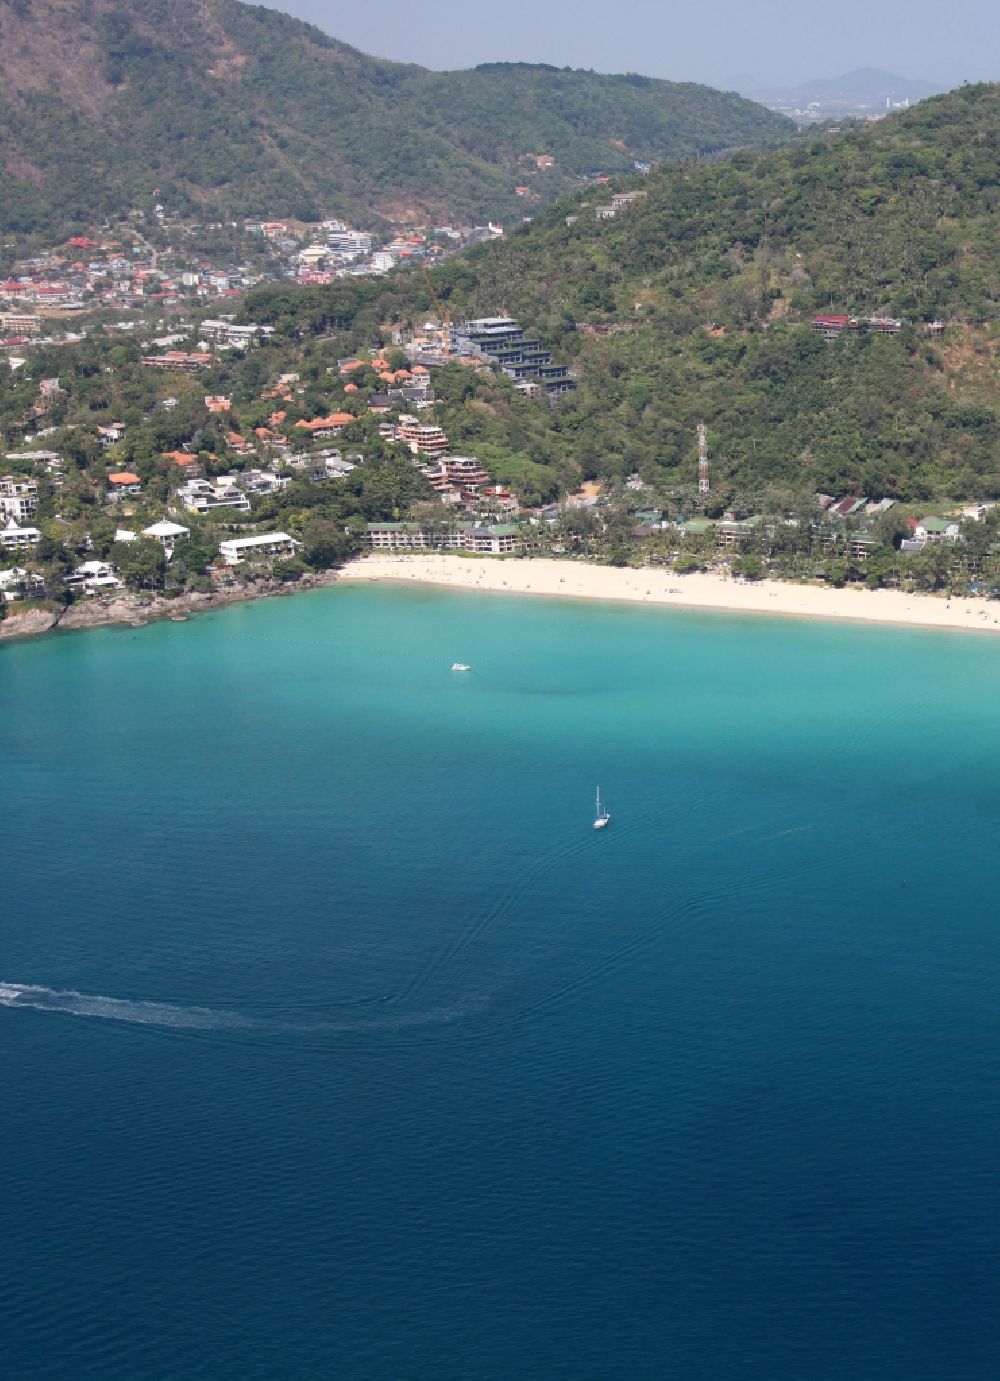 Luftaufnahme Karon - Kata Noi Beach vor der Stadt Karon auf der Insel Phuket in Thailand